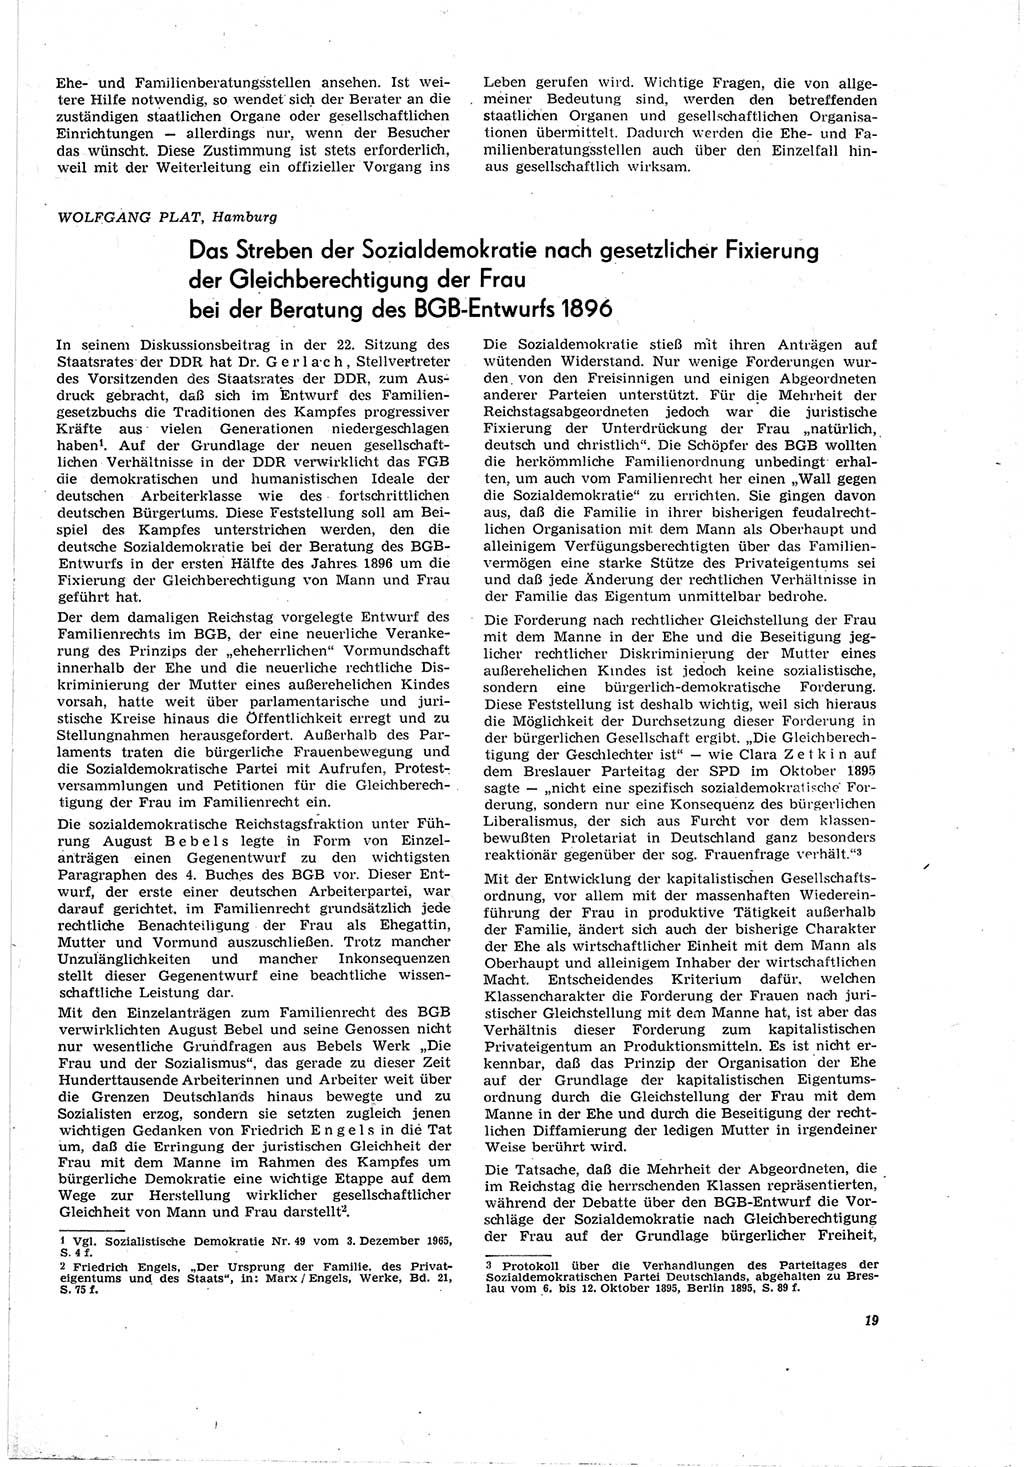 Neue Justiz (NJ), Zeitschrift für Recht und Rechtswissenschaft [Deutsche Demokratische Republik (DDR)], 20. Jahrgang 1966, Seite 19 (NJ DDR 1966, S. 19)